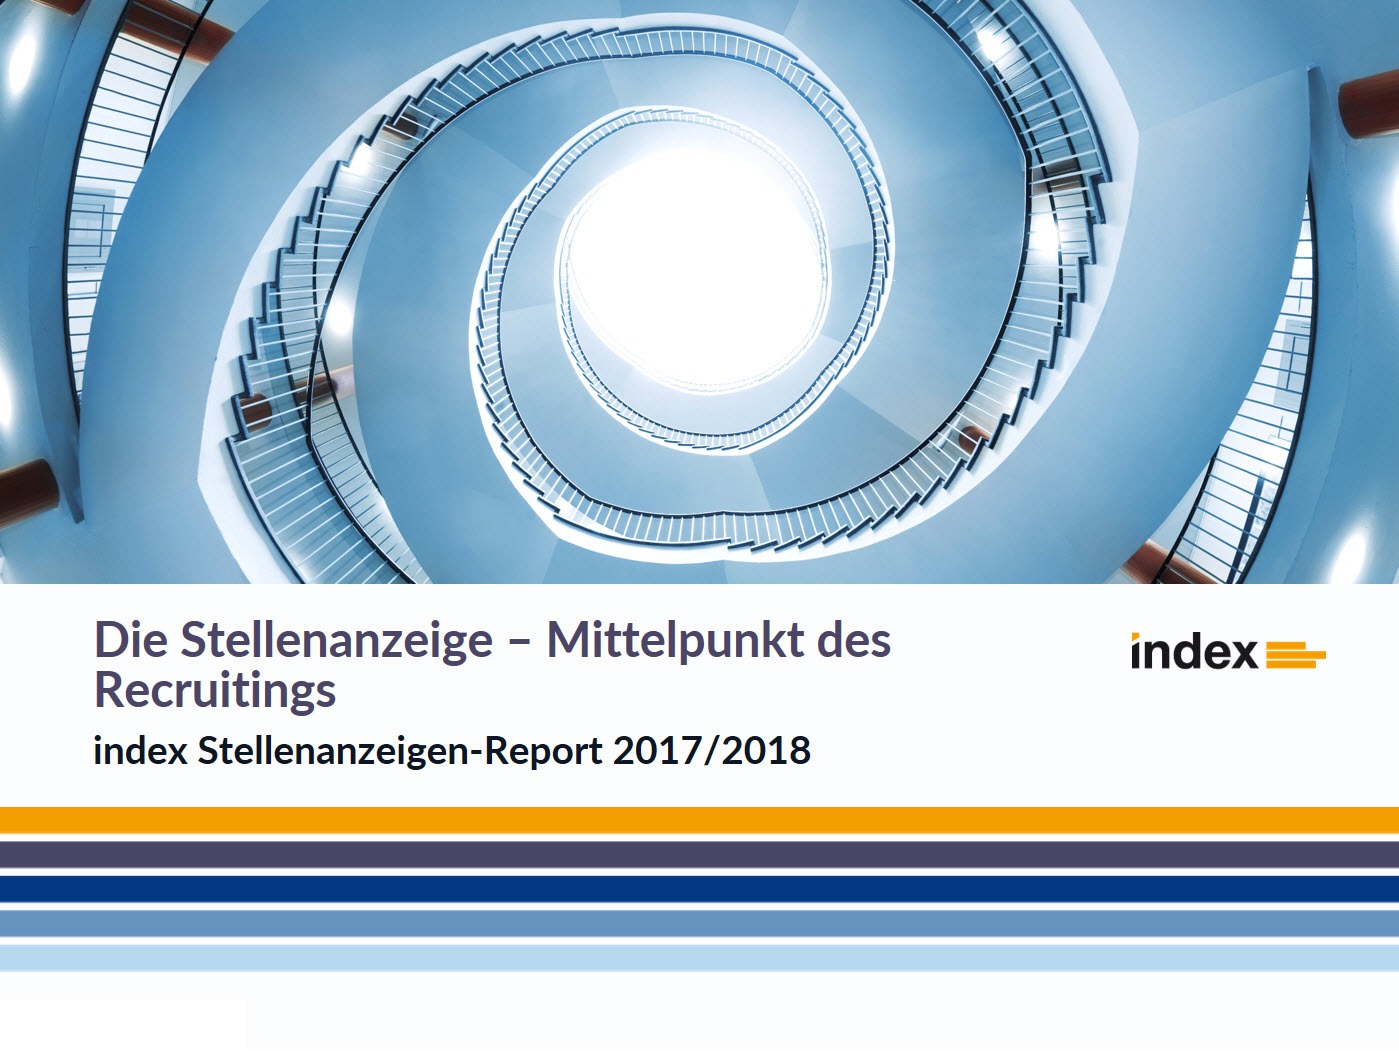 index Stellenanzeigen-Report 2017/2018